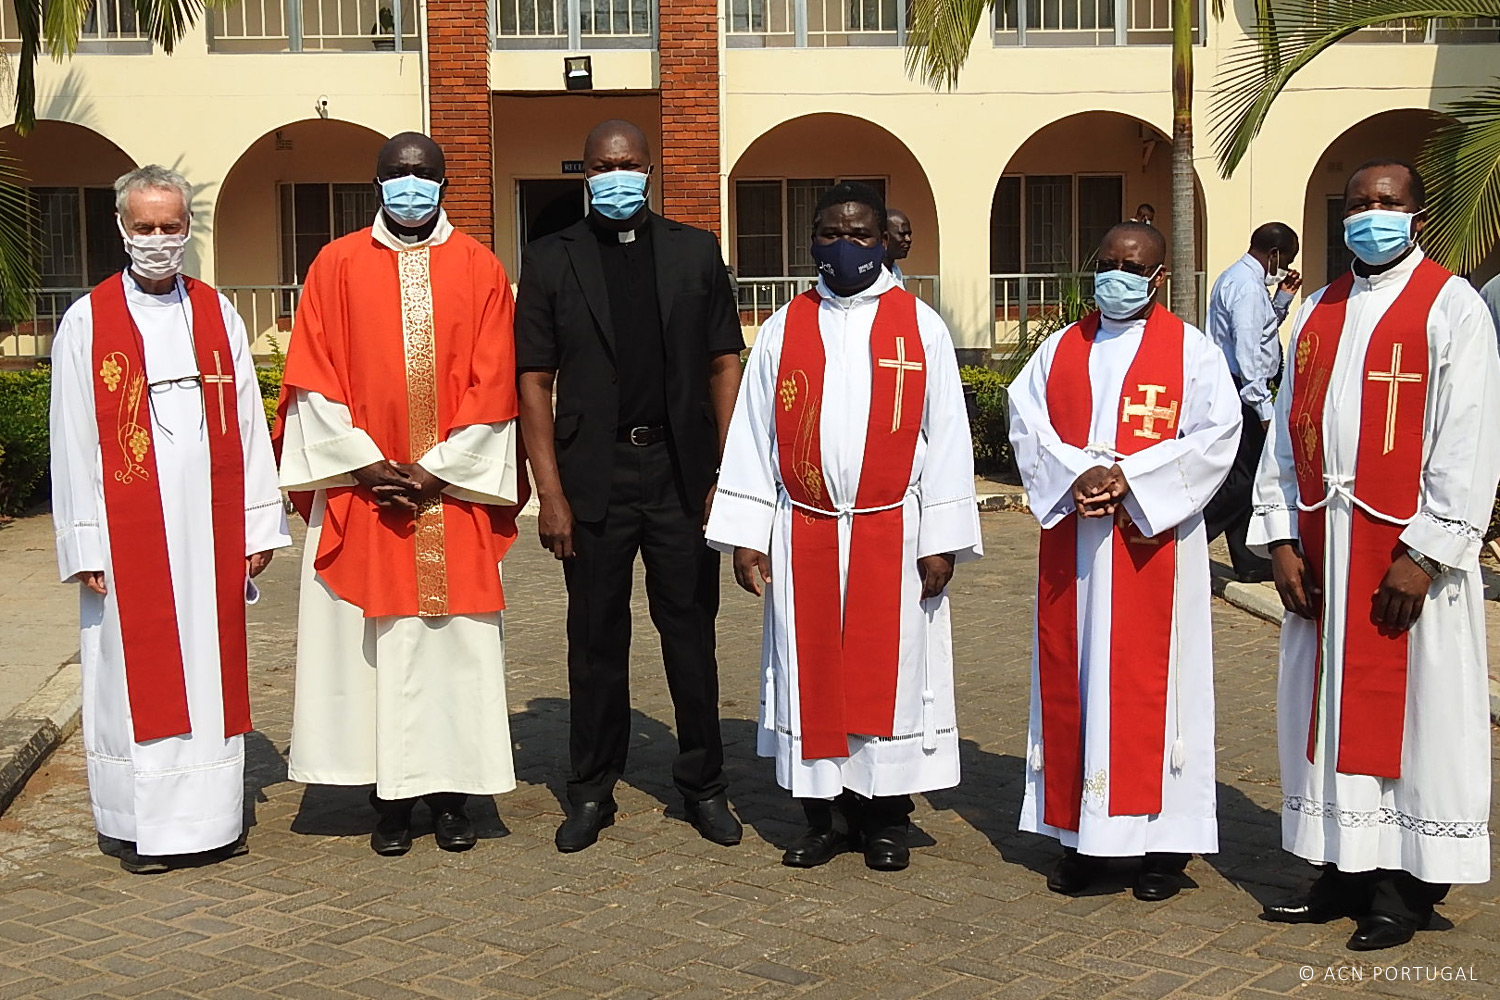 ZÂMBIA: Equipamento de protecção pessoal contra a Covid-19 para padres e religiosos em três dioceses